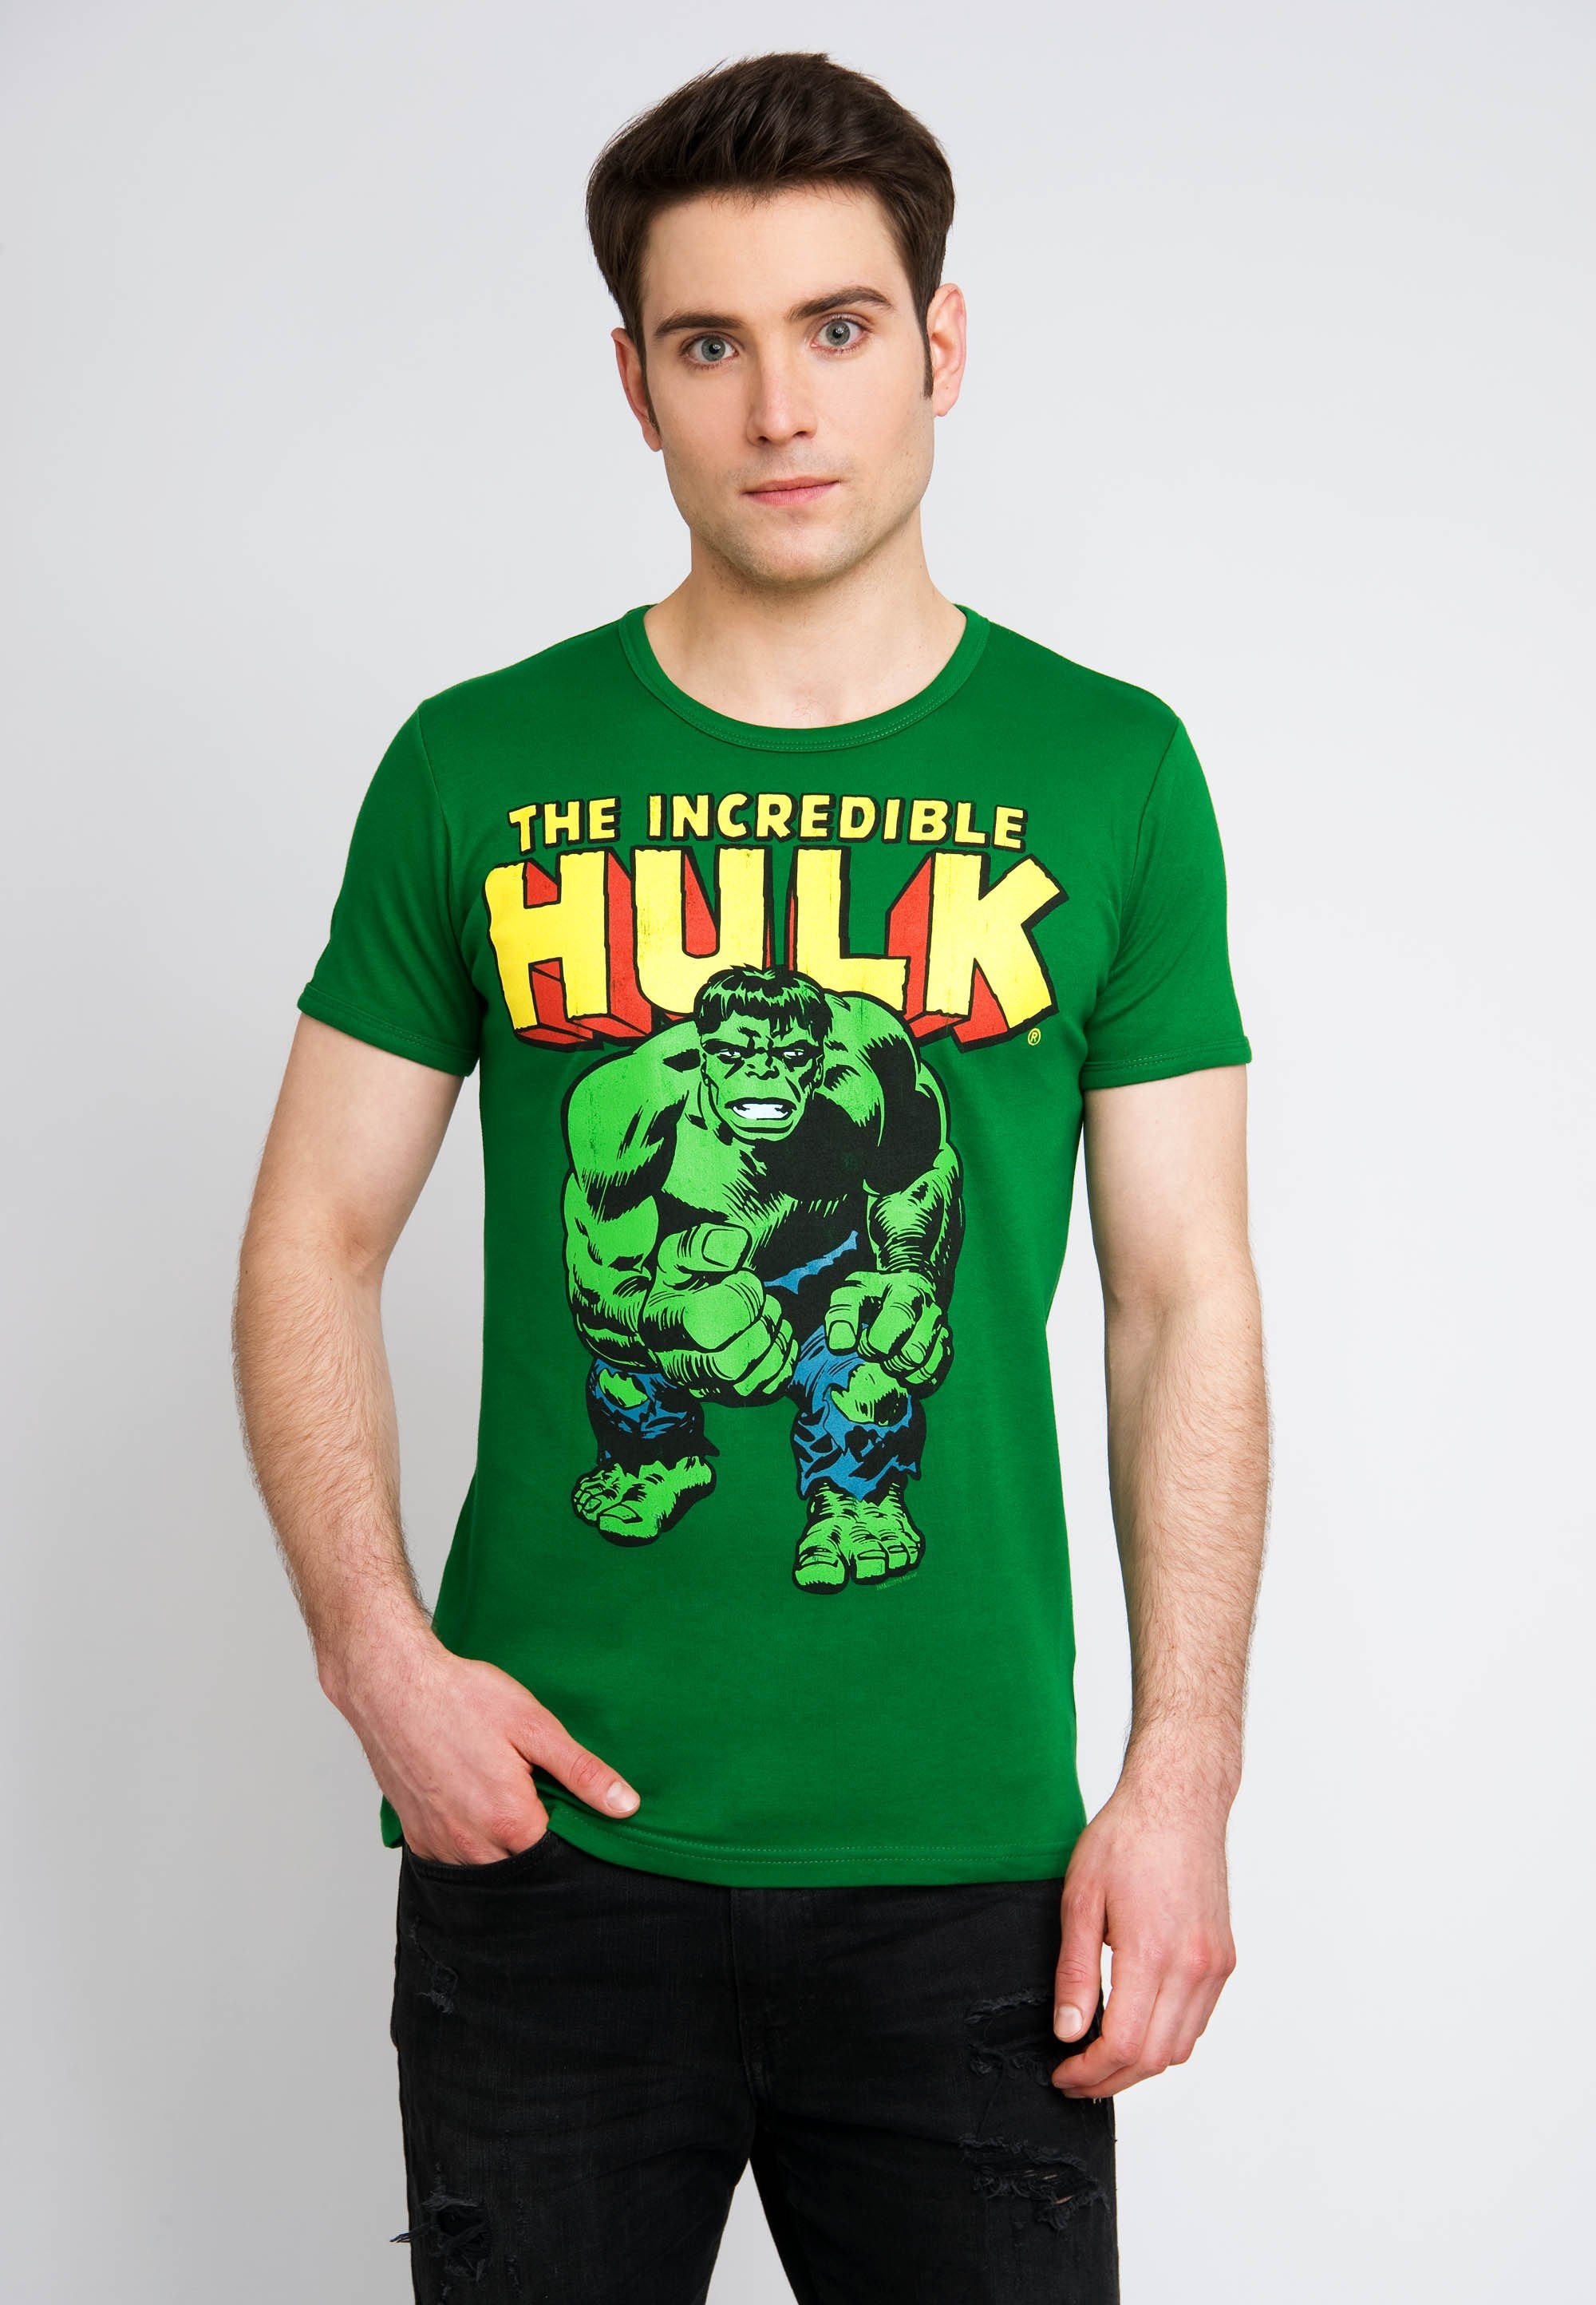 mit LOGOSHIRT Retro-Motiv Hulk Incredible The T-Shirt